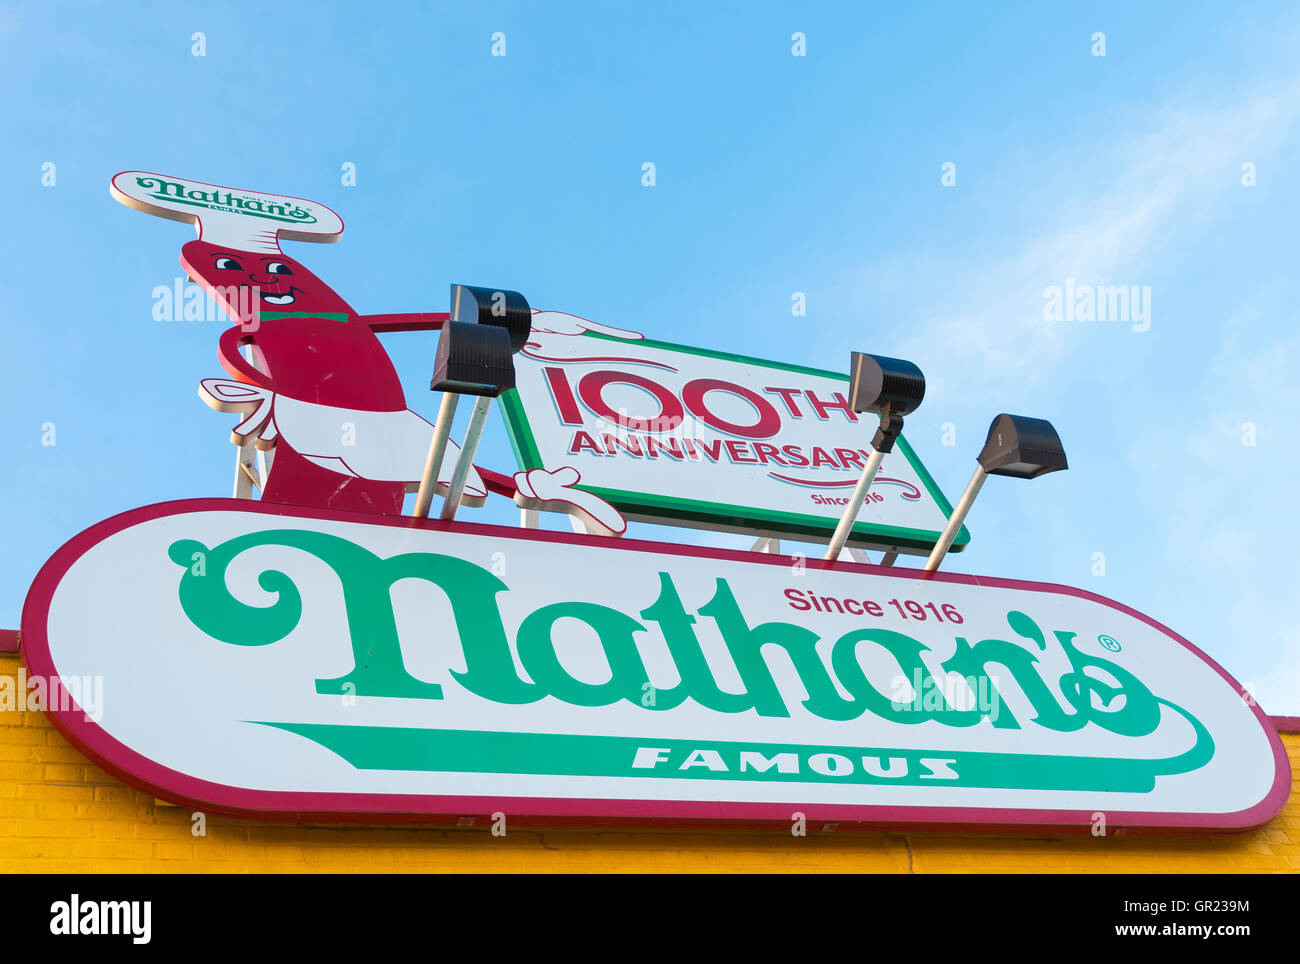 Nahaufnahme von Zeichen und aufbauend auf Nathans berühmten Hot Dog Restaurant auf Coney Island Boardwalk im Sommer. Stockfoto